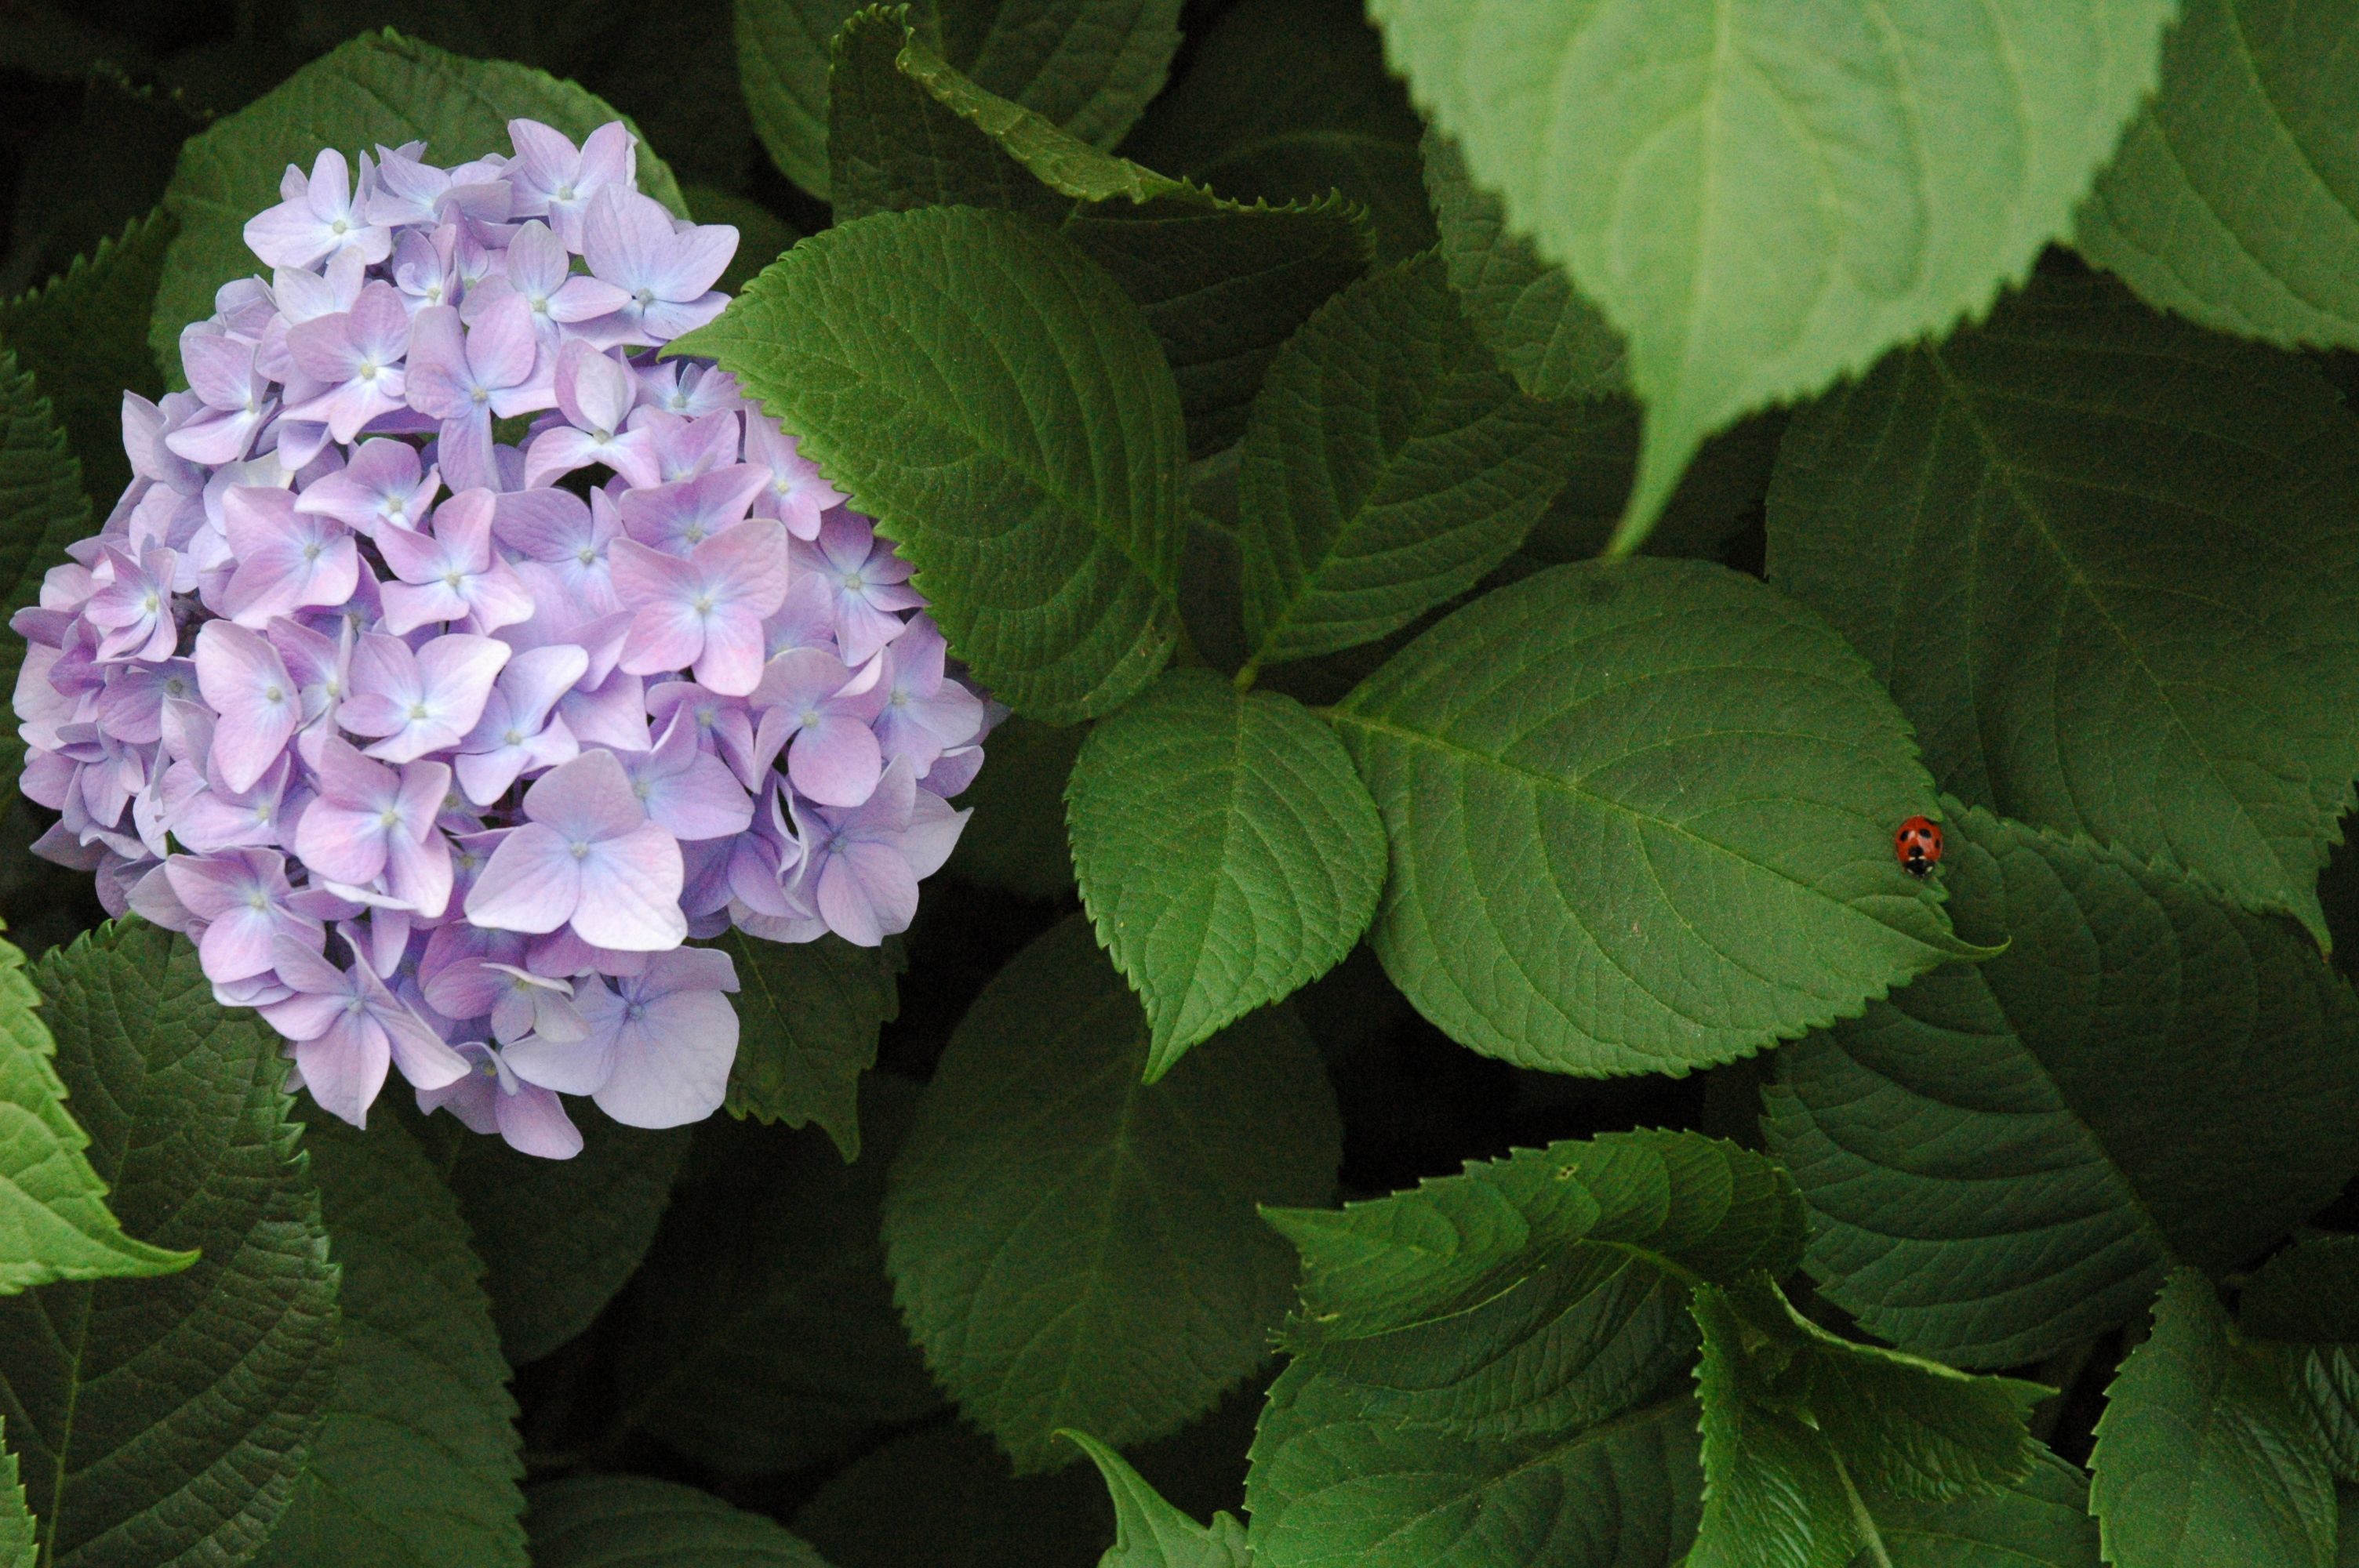 てんとう虫と紫陽花 梅雨の季節のお花 アロタン アロマテラピーの語源のお話